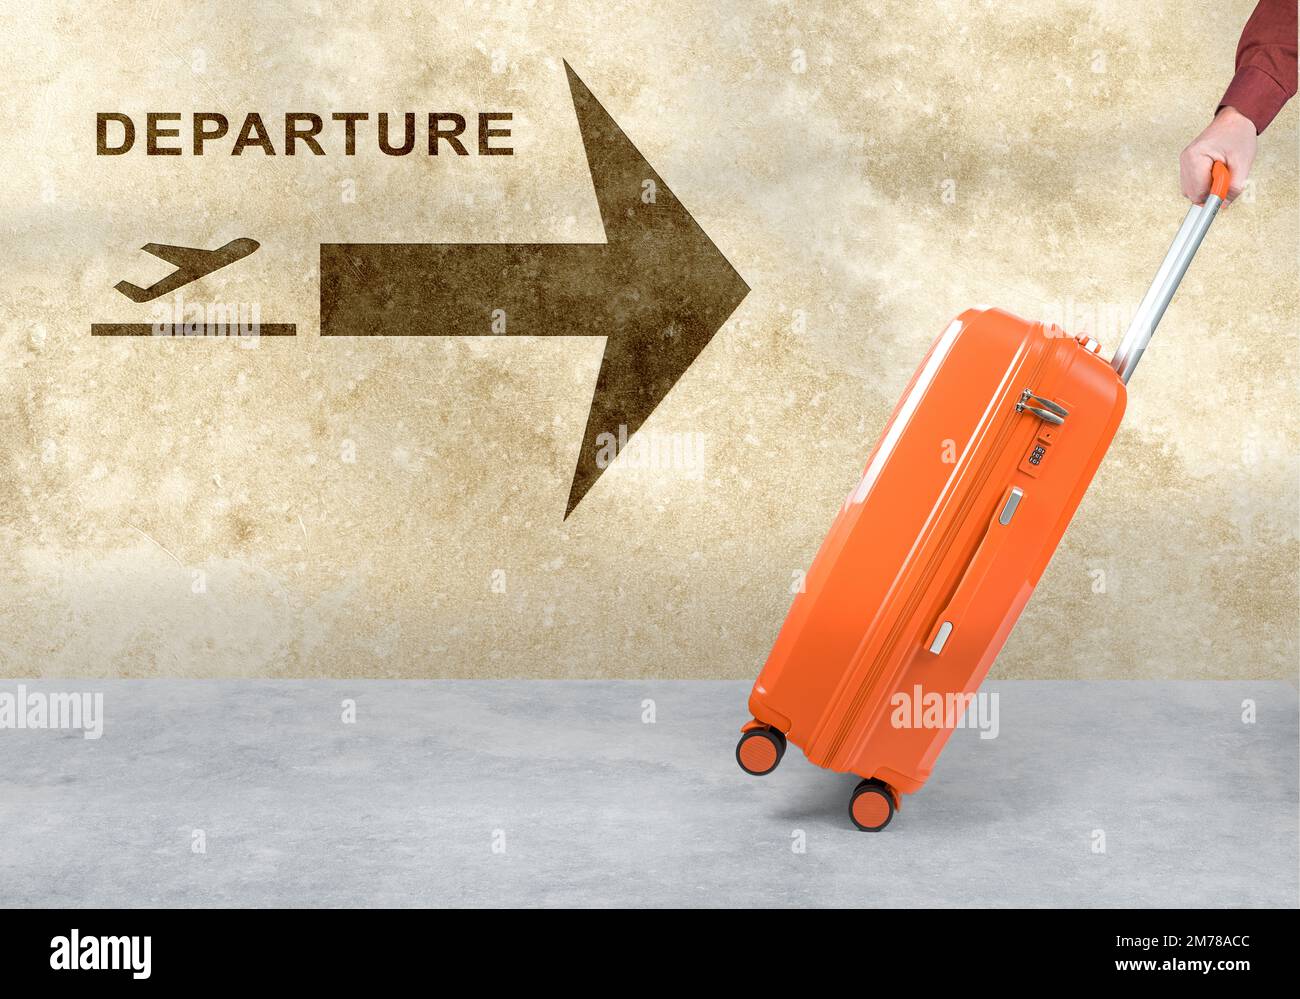 porte-mains valise orange sur fond blanc. Panneau « aéroport » avec l'icône « départ avion » sur le mur. Bagages mobiles des passagers en mouvement. holida d'été Banque D'Images